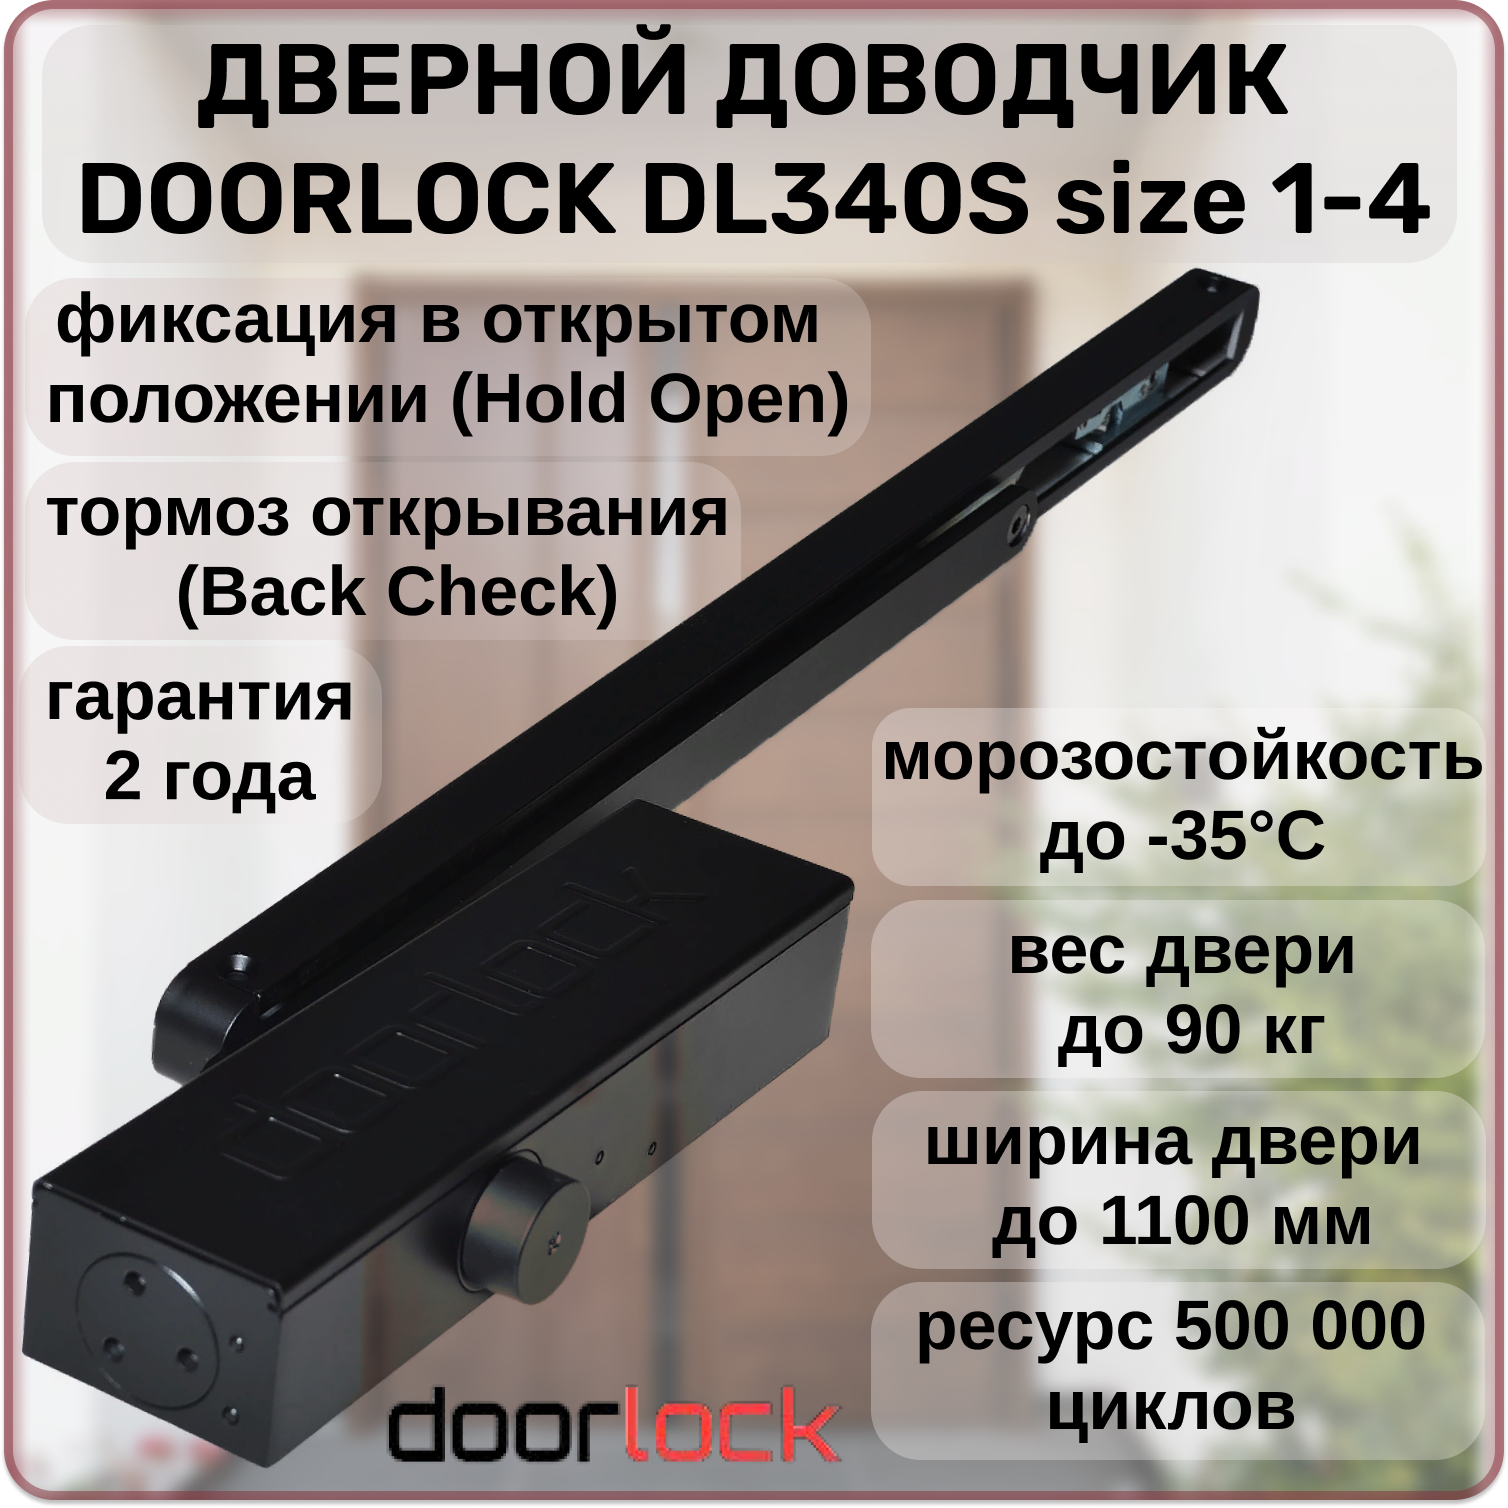 Доводчик дверной DOORLOCK DL340S size 1-4 морозостойкий уличный от 20 до 90кг с фиксацией в открытом положении тормозом открывания